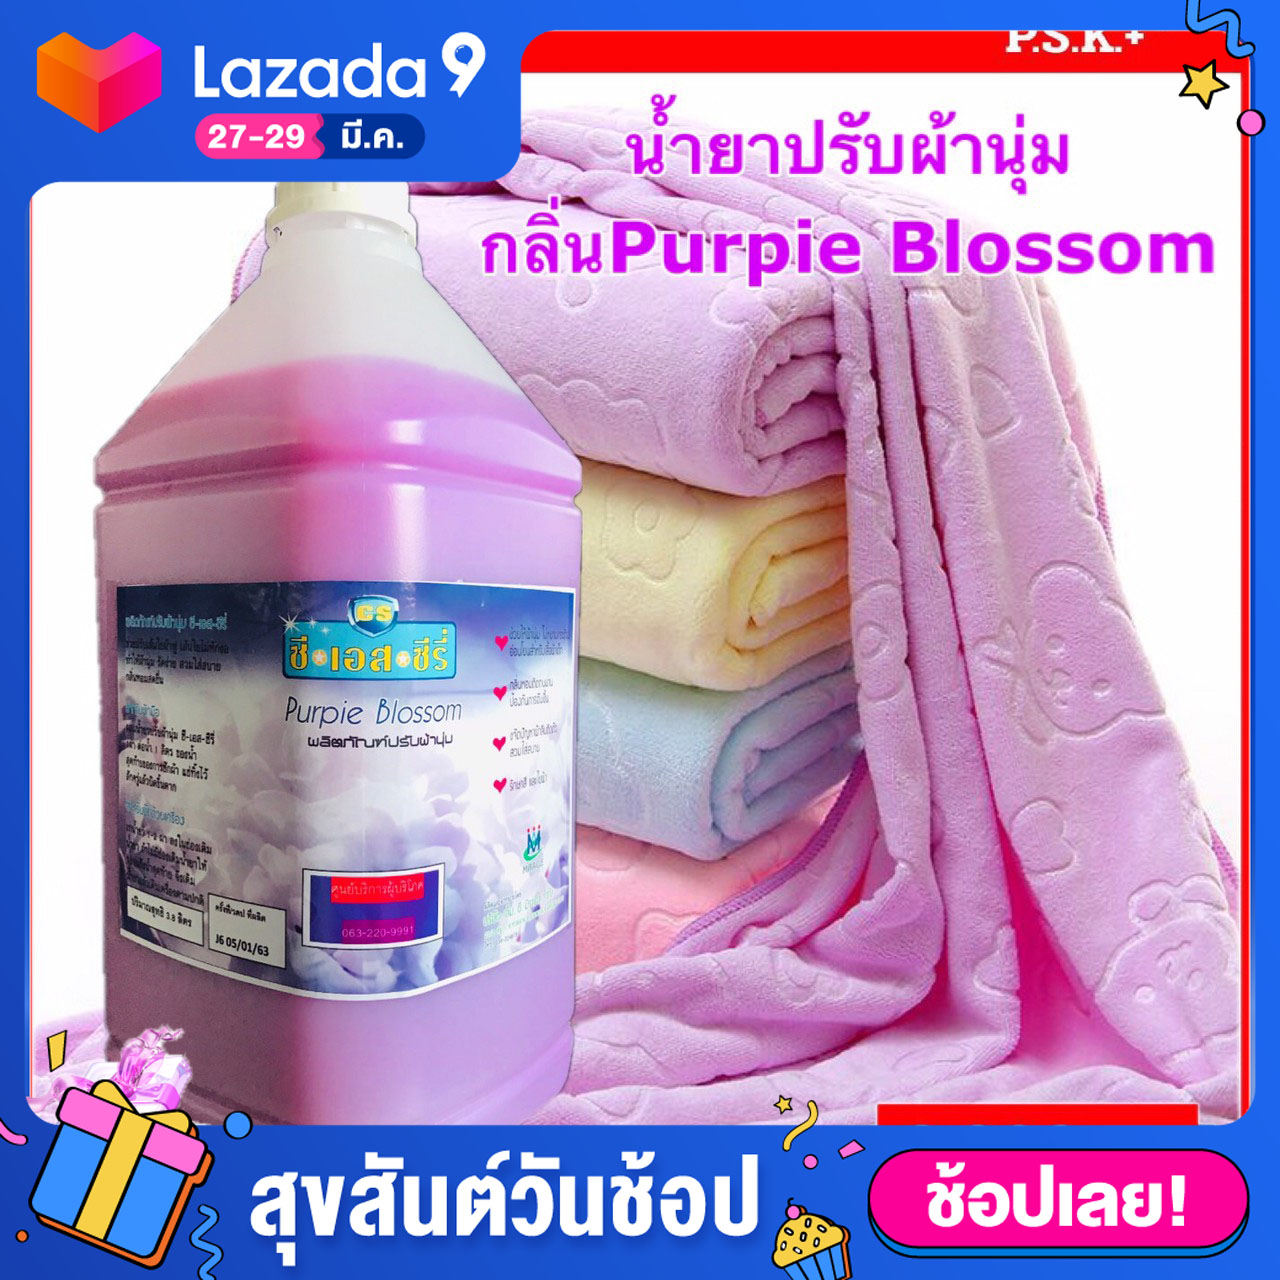 น้ำยาปรับผ้านุ่ม กลิ่นPurpie Blossom  สีม่วง ขนาดบรรจุ 3,800 มล. จำนวน 1 แกลลอน